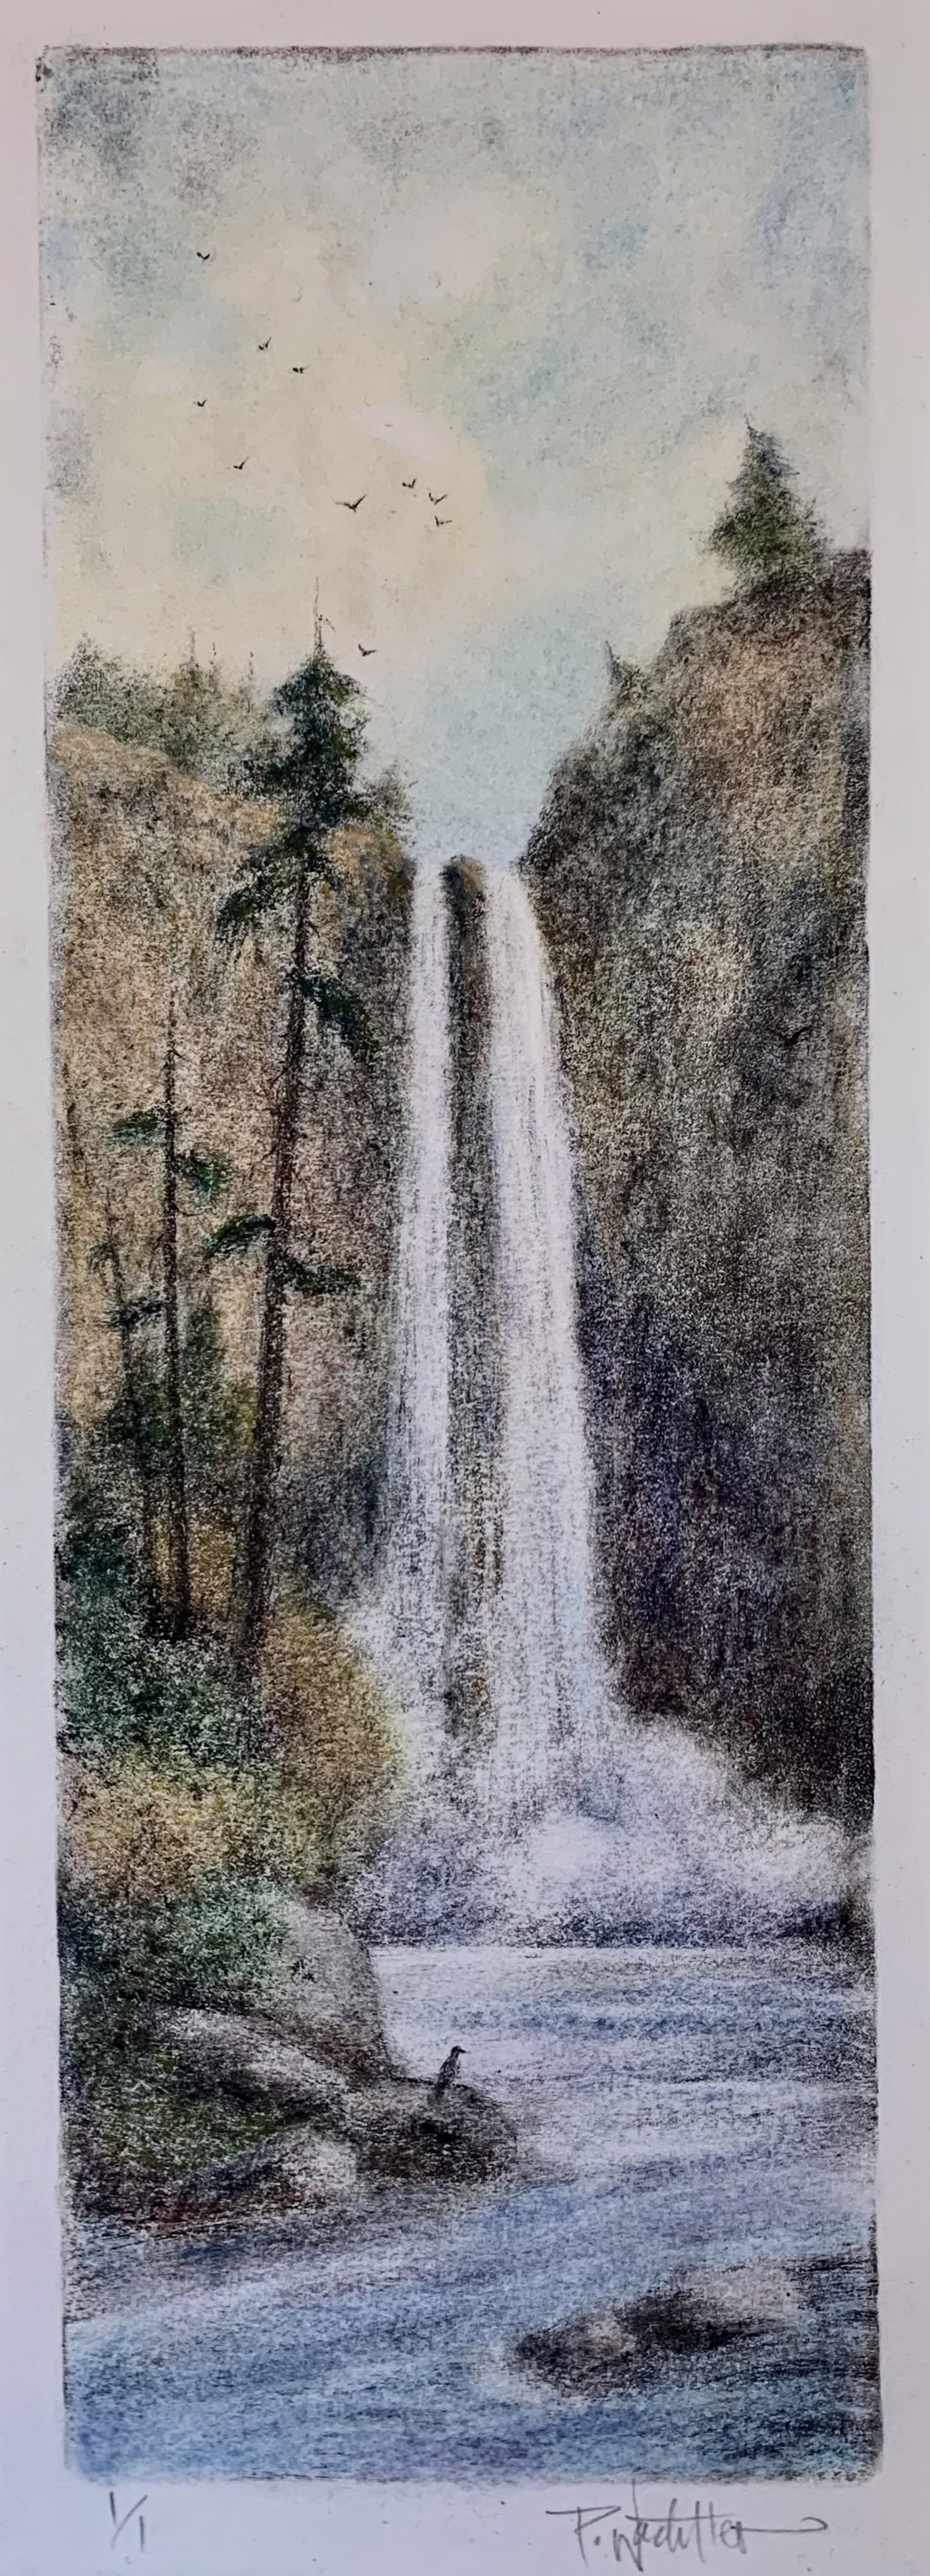 Snoqualmie Falls by Pamela Wachtler